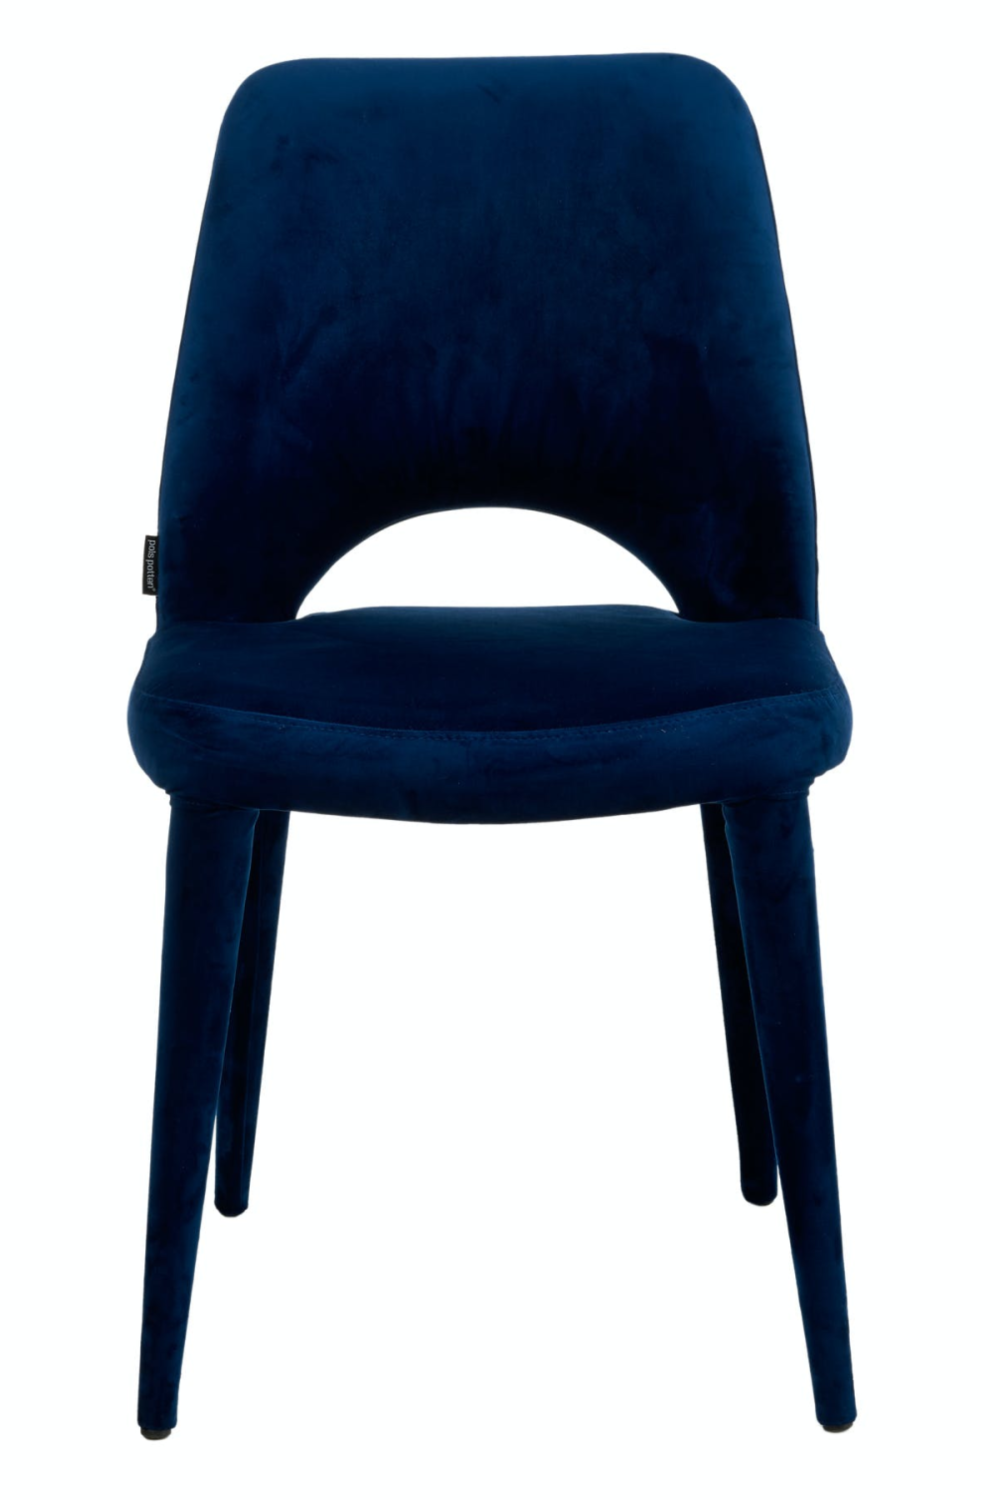 Blue Velvet Dining Chair | Pols Potten Holy | OROA.com